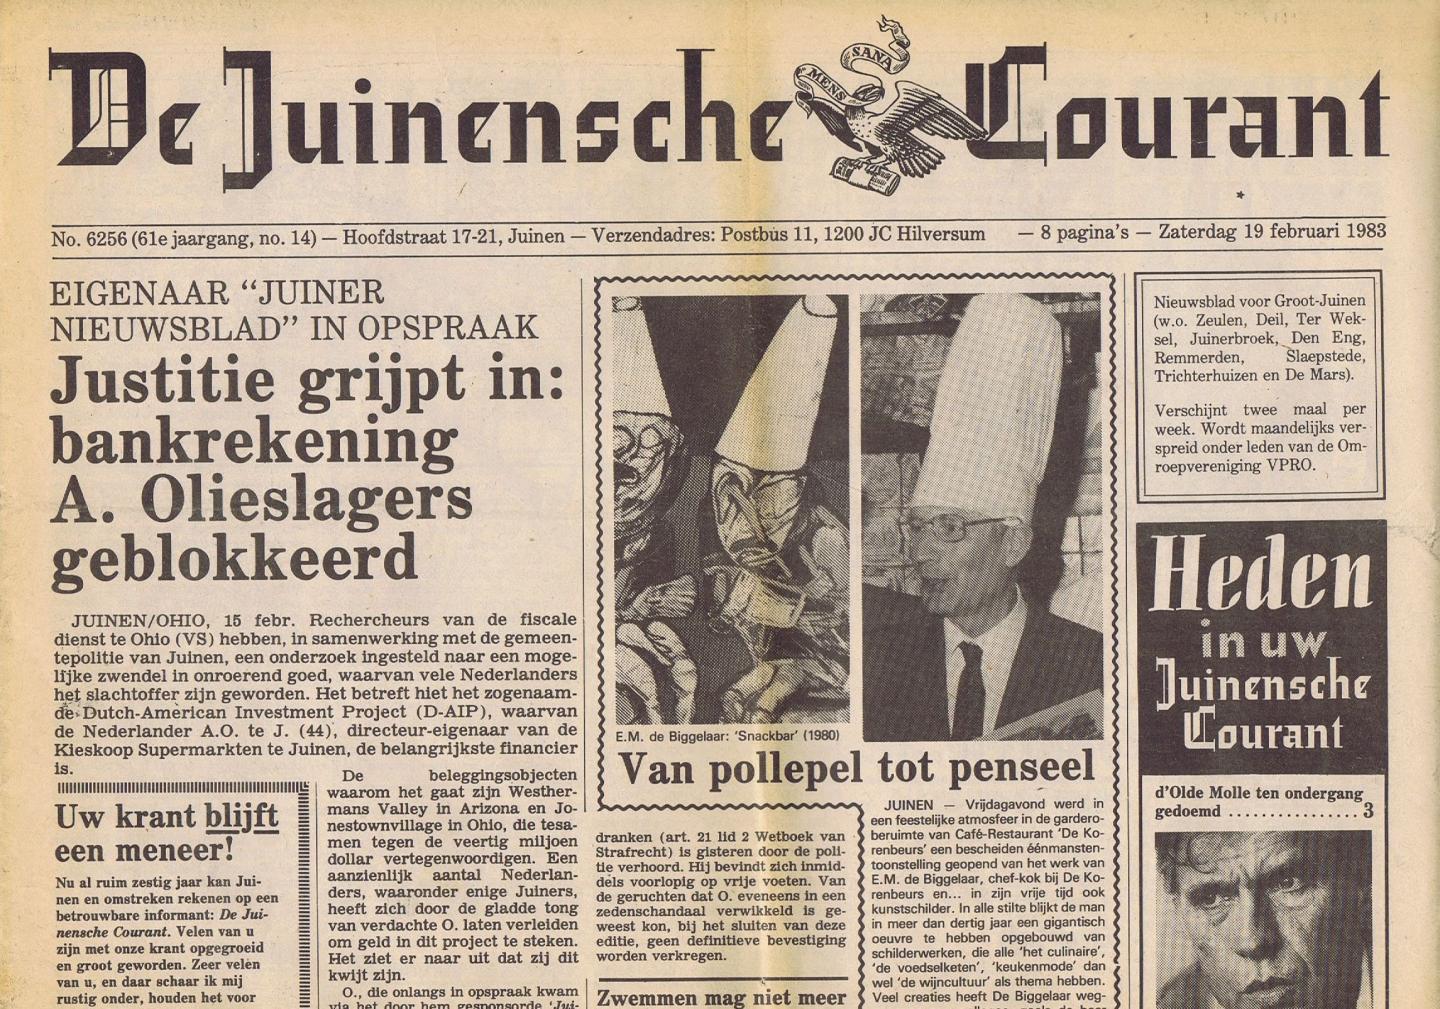 Reve, Gerard - Nasleep van Reve-interview: Carmiggelt doet onthutsende uitspraken -- in: De Juinensche Courant, 19 februari 1983